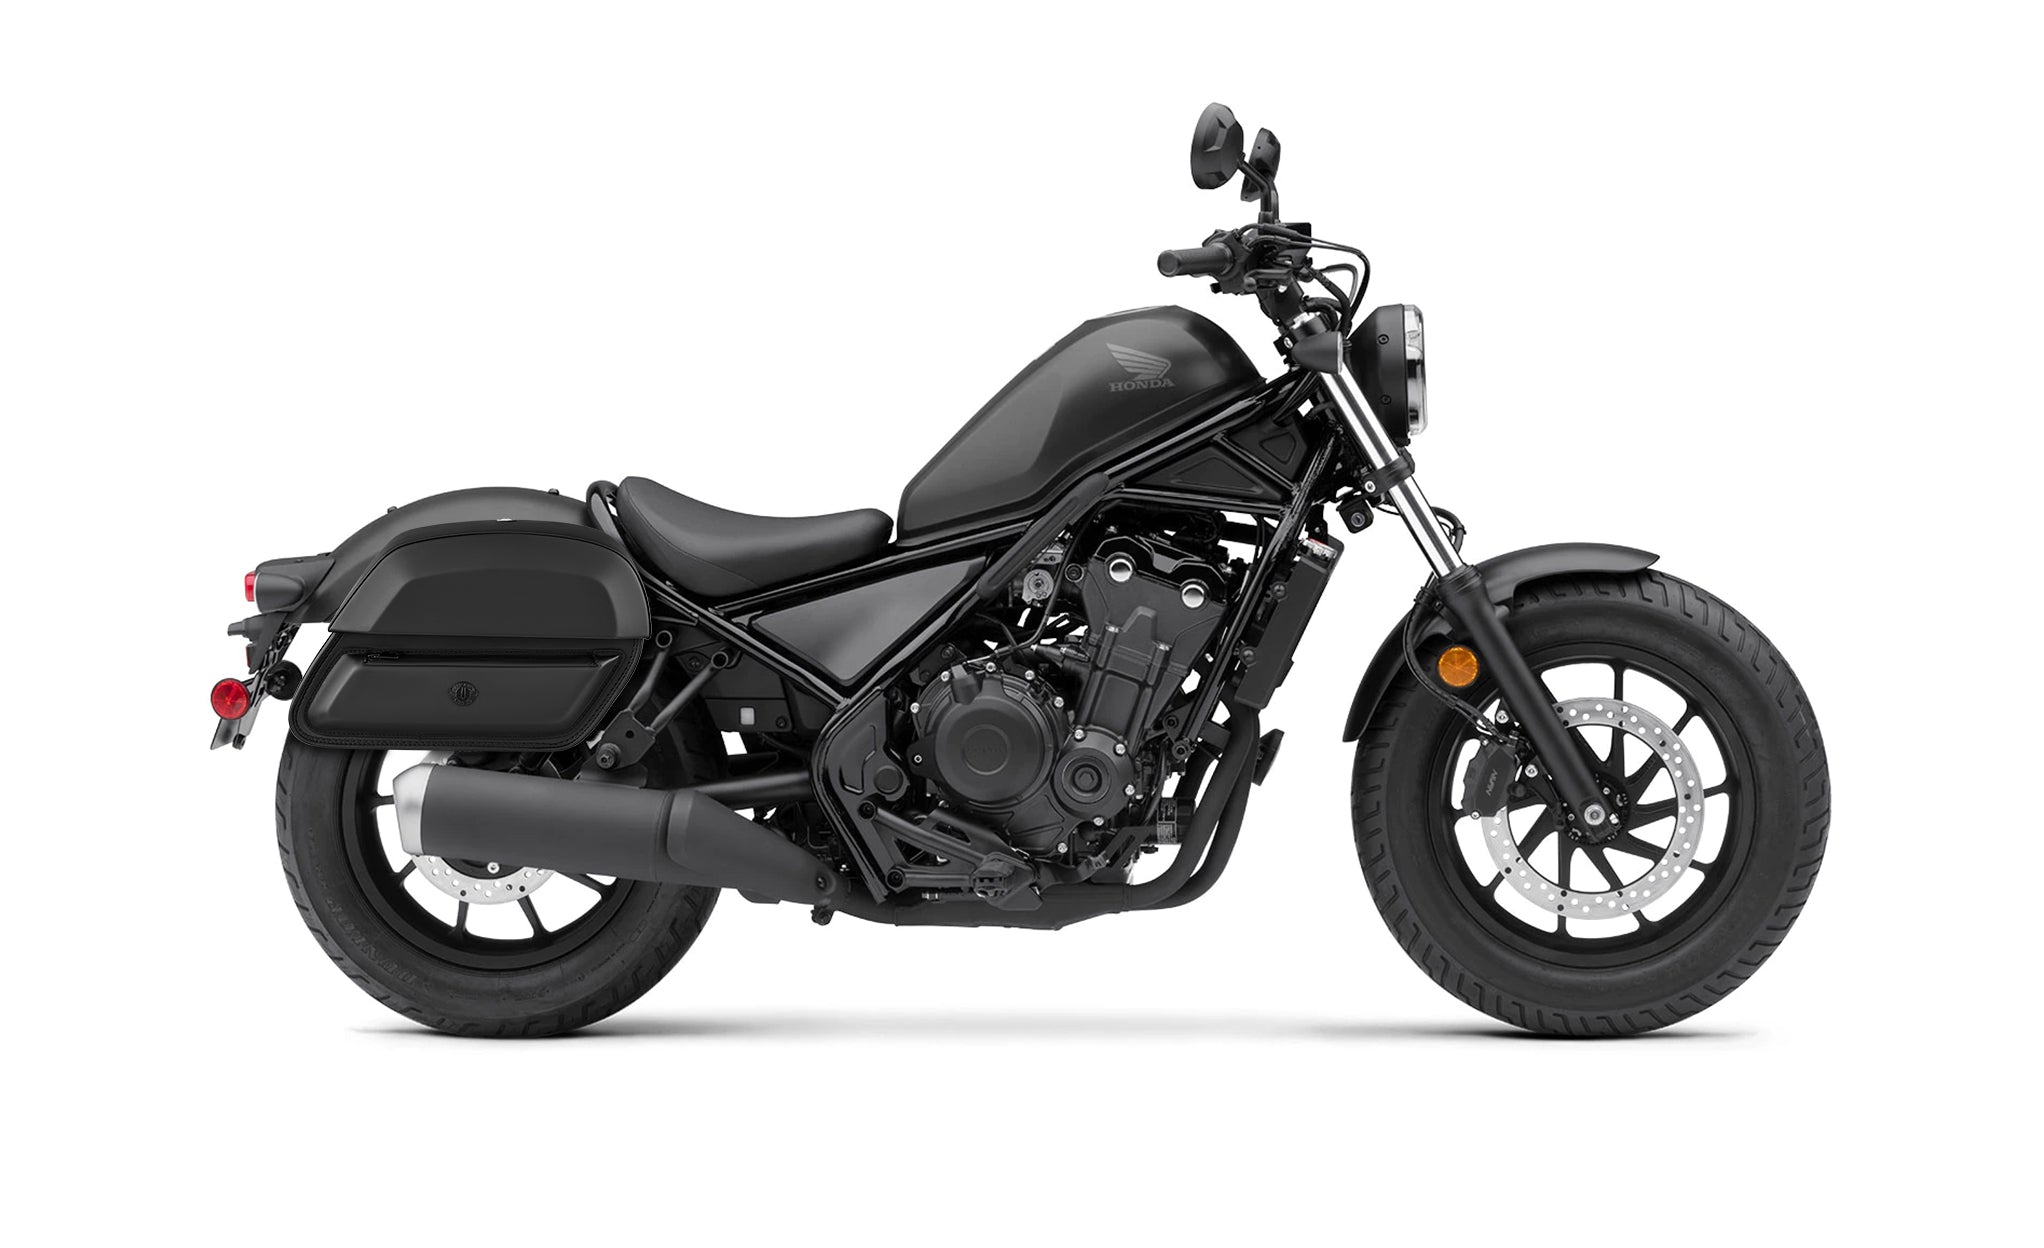 28L - Pantheon Medium Quick-Mount Honda Rebel 500 Motorcycle Saddlebags @expand